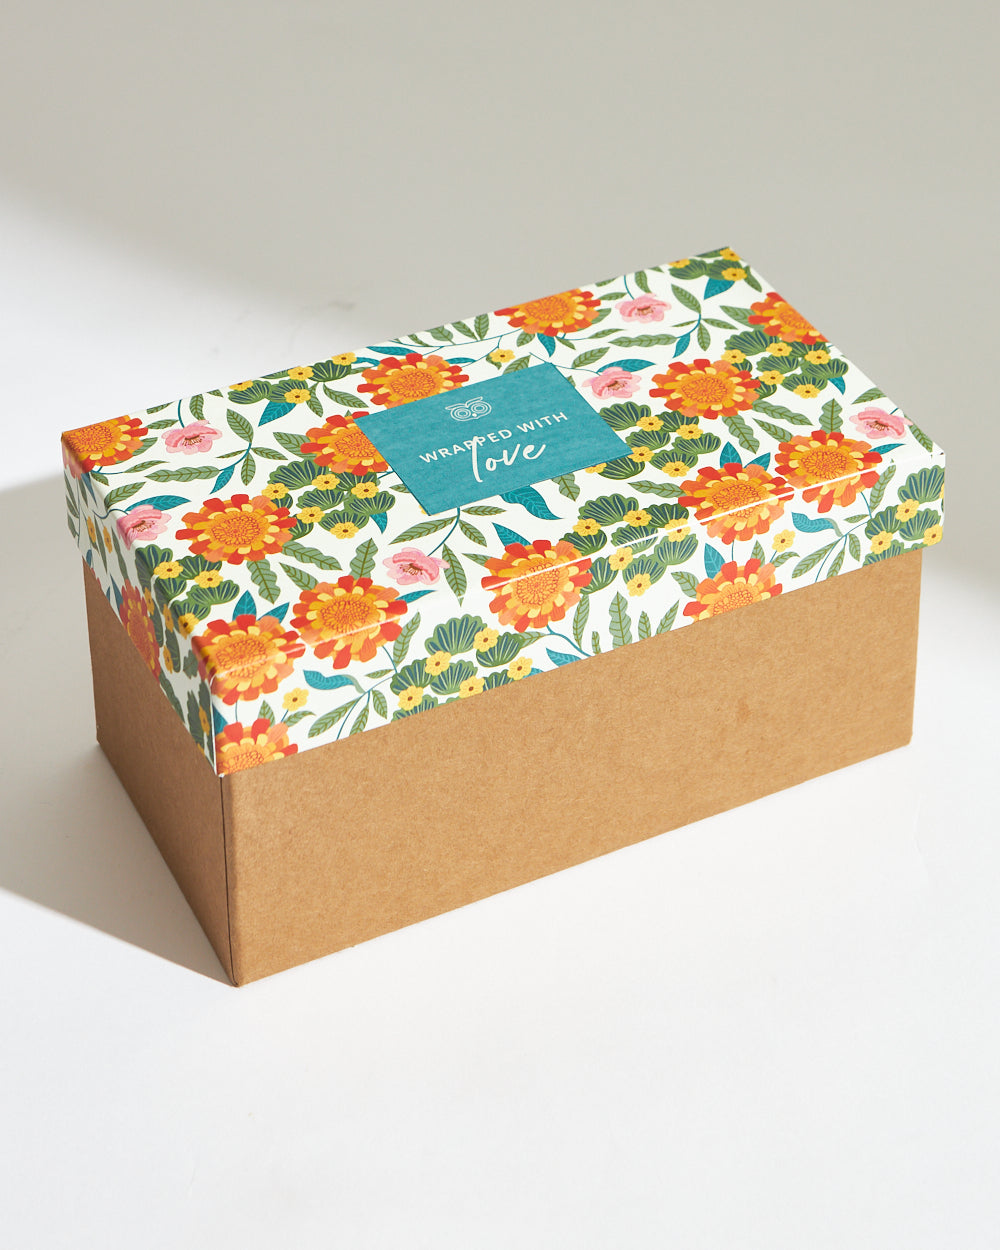 Filter Coffee Tumbler Dabara Brassware Gift Box | Set of 2